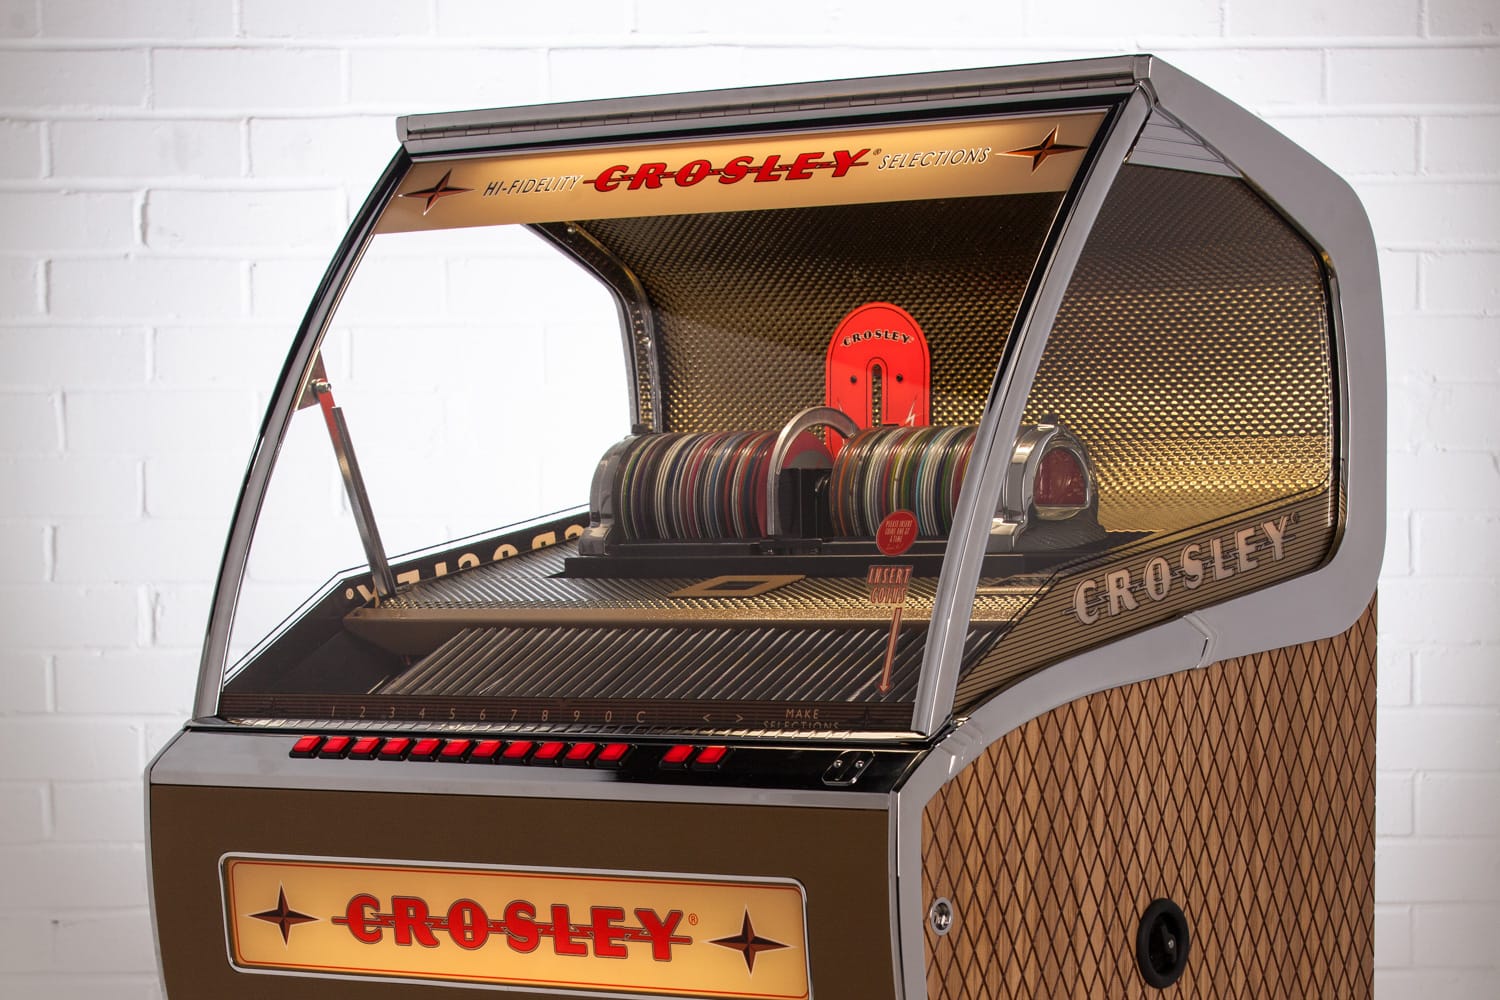 Groß darf es sein, aber es soll lieber Musik machen? Von Crosley kriegen Sie eine ausgewachsene Jukebox mit Platz für 80 CDs – das Design ist Retro, die Technik absolut up to date. Preis für Rocket etwa 8500 Euro.